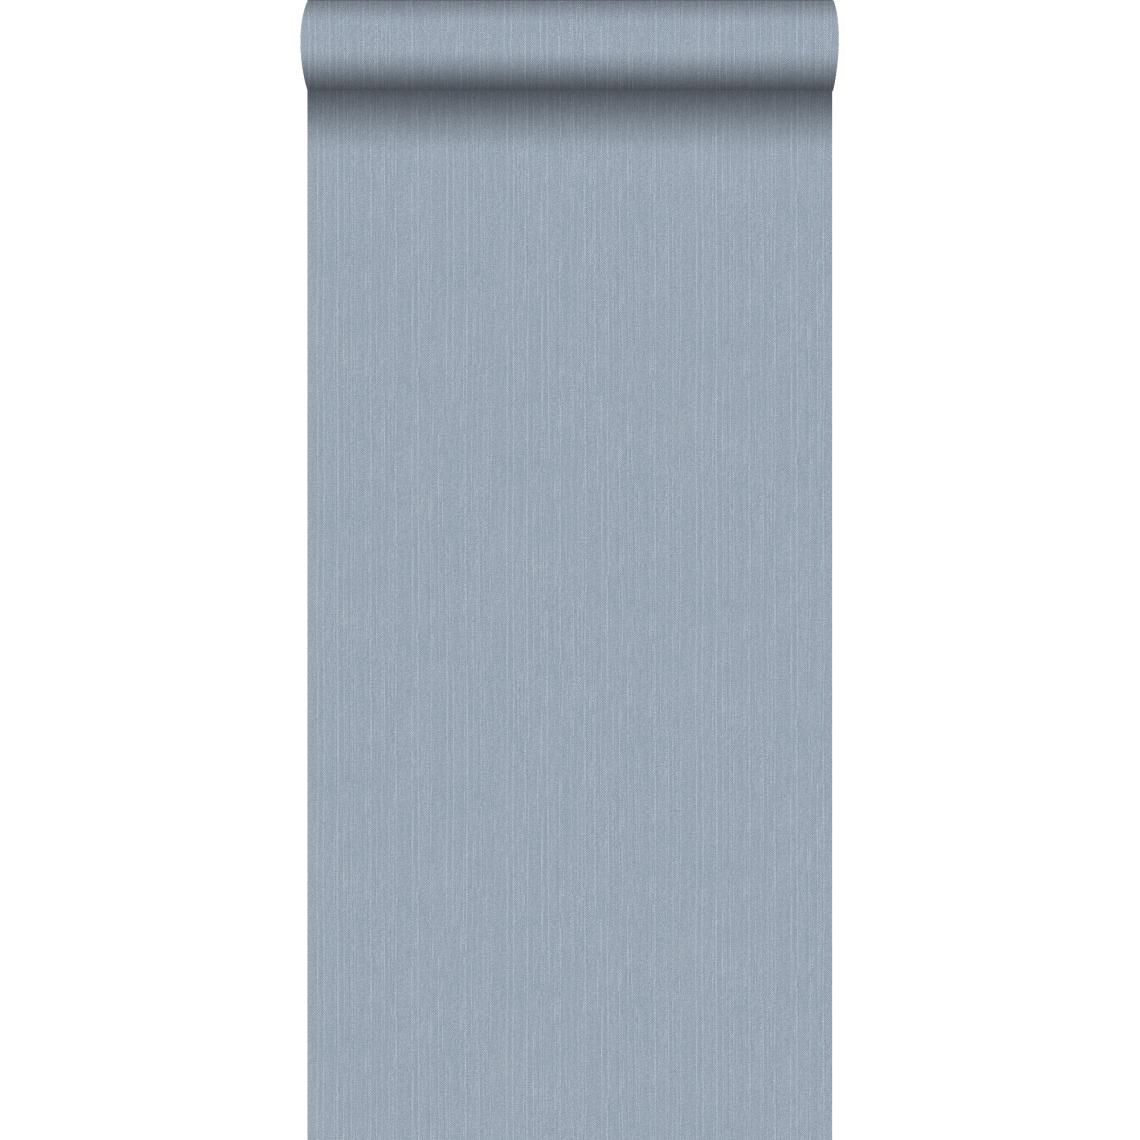 ESTAhome - ESTAhome papier peint texture denim jeans bleu clair - 137733 - 53 cm x 10,05 m - Papier peint